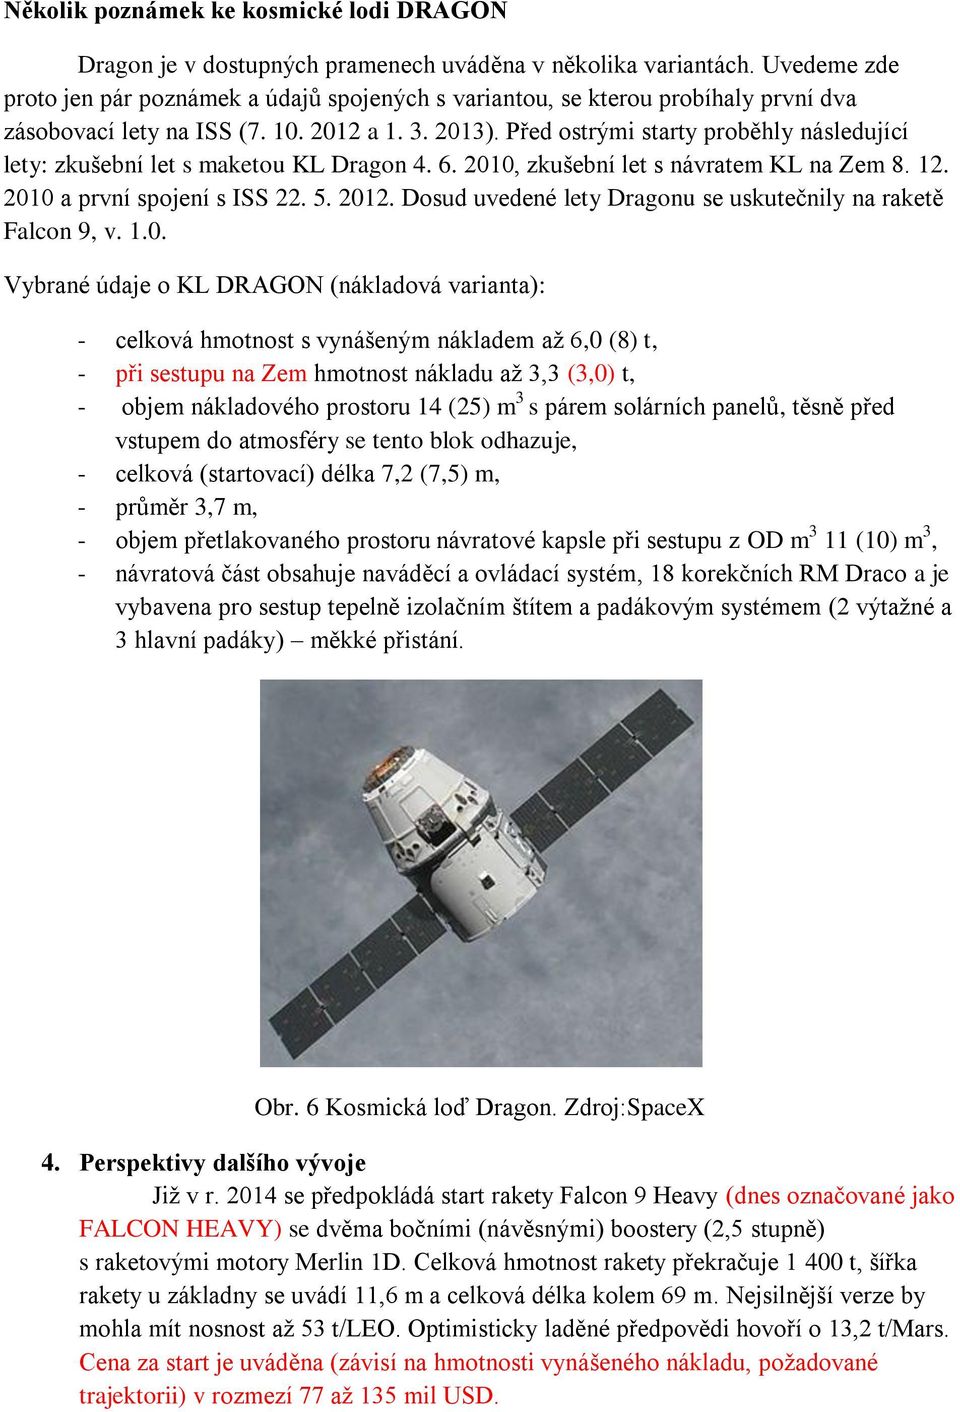 Před ostrými starty proběhly následující lety: zkušební let s maketou KL Dragon 4. 6. 2010, zkušební let s návratem KL na Zem 8. 12. 2010 a první spojení s ISS 22. 5. 2012.